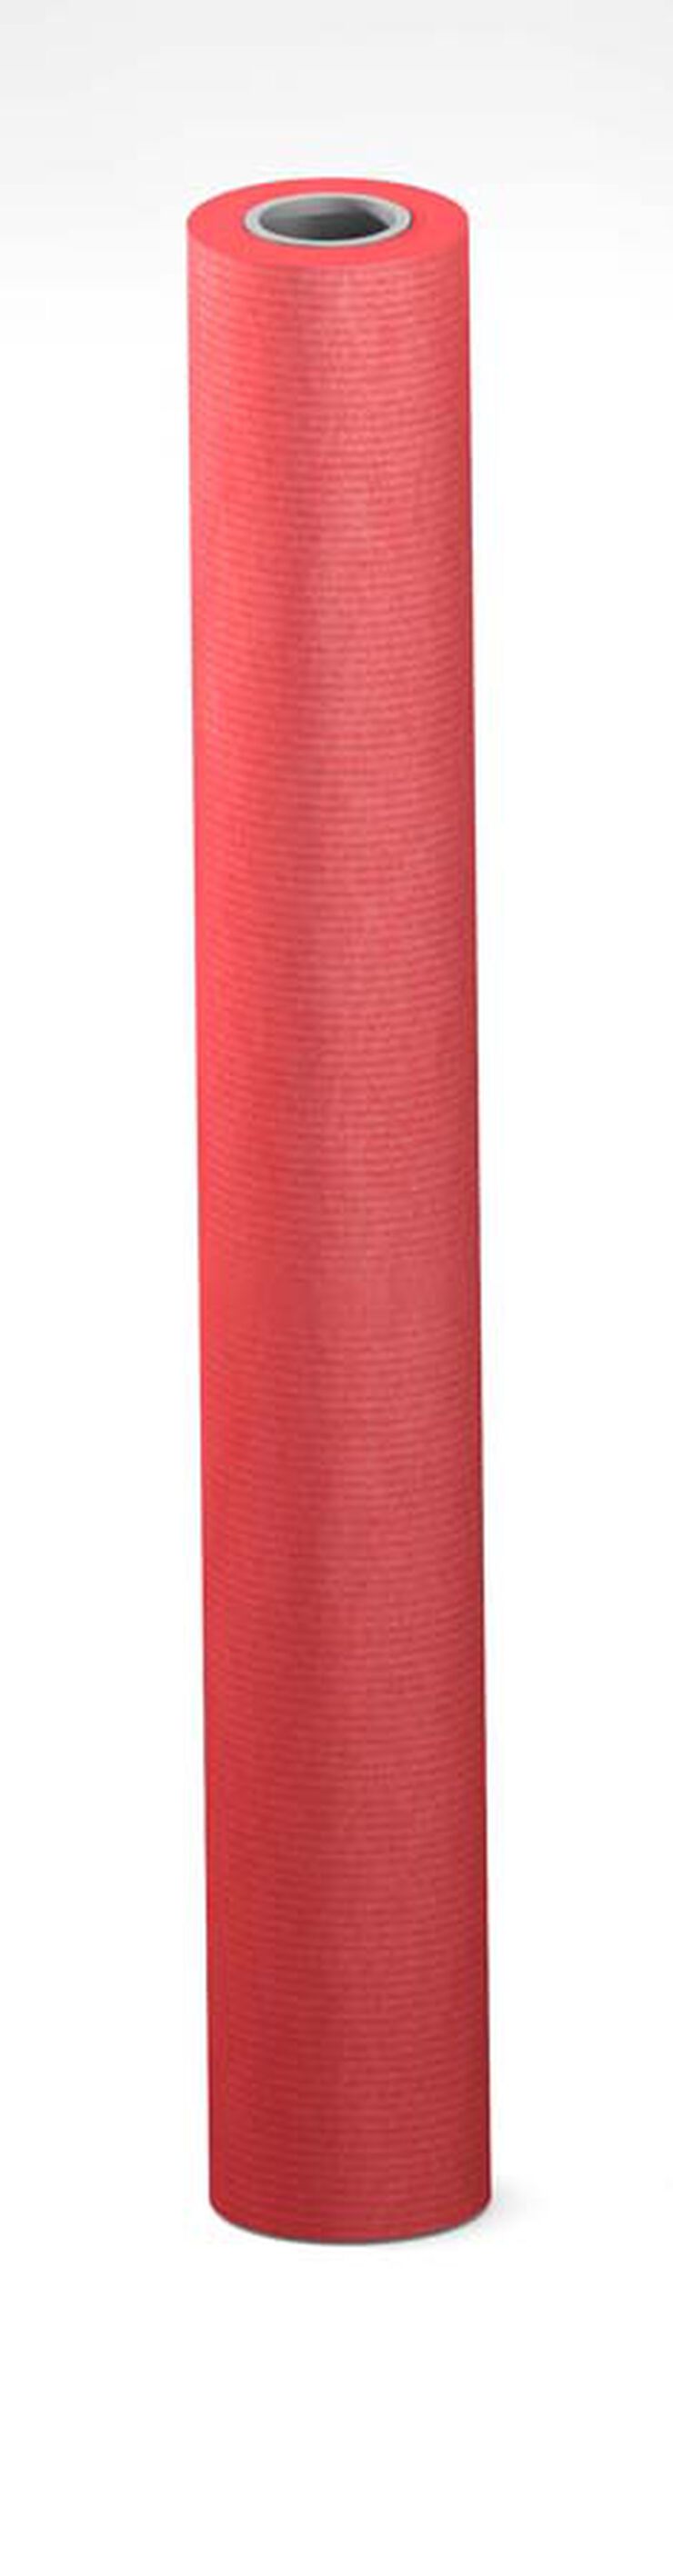 Bobina de papel kraft Sadipal 1x25m 90g rojo